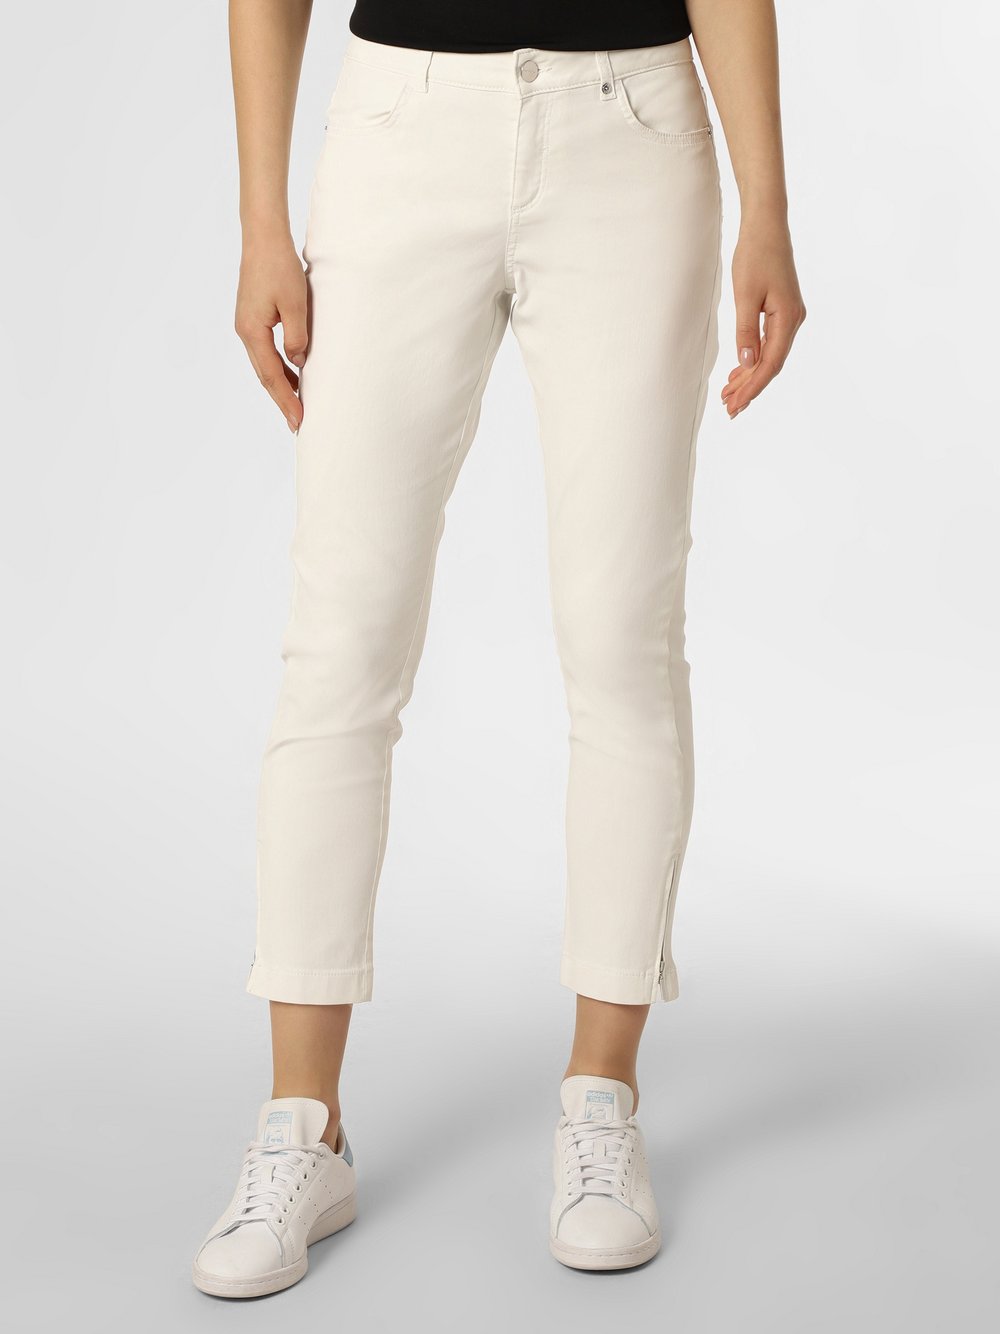 Comma - Spodnie damskie, biały